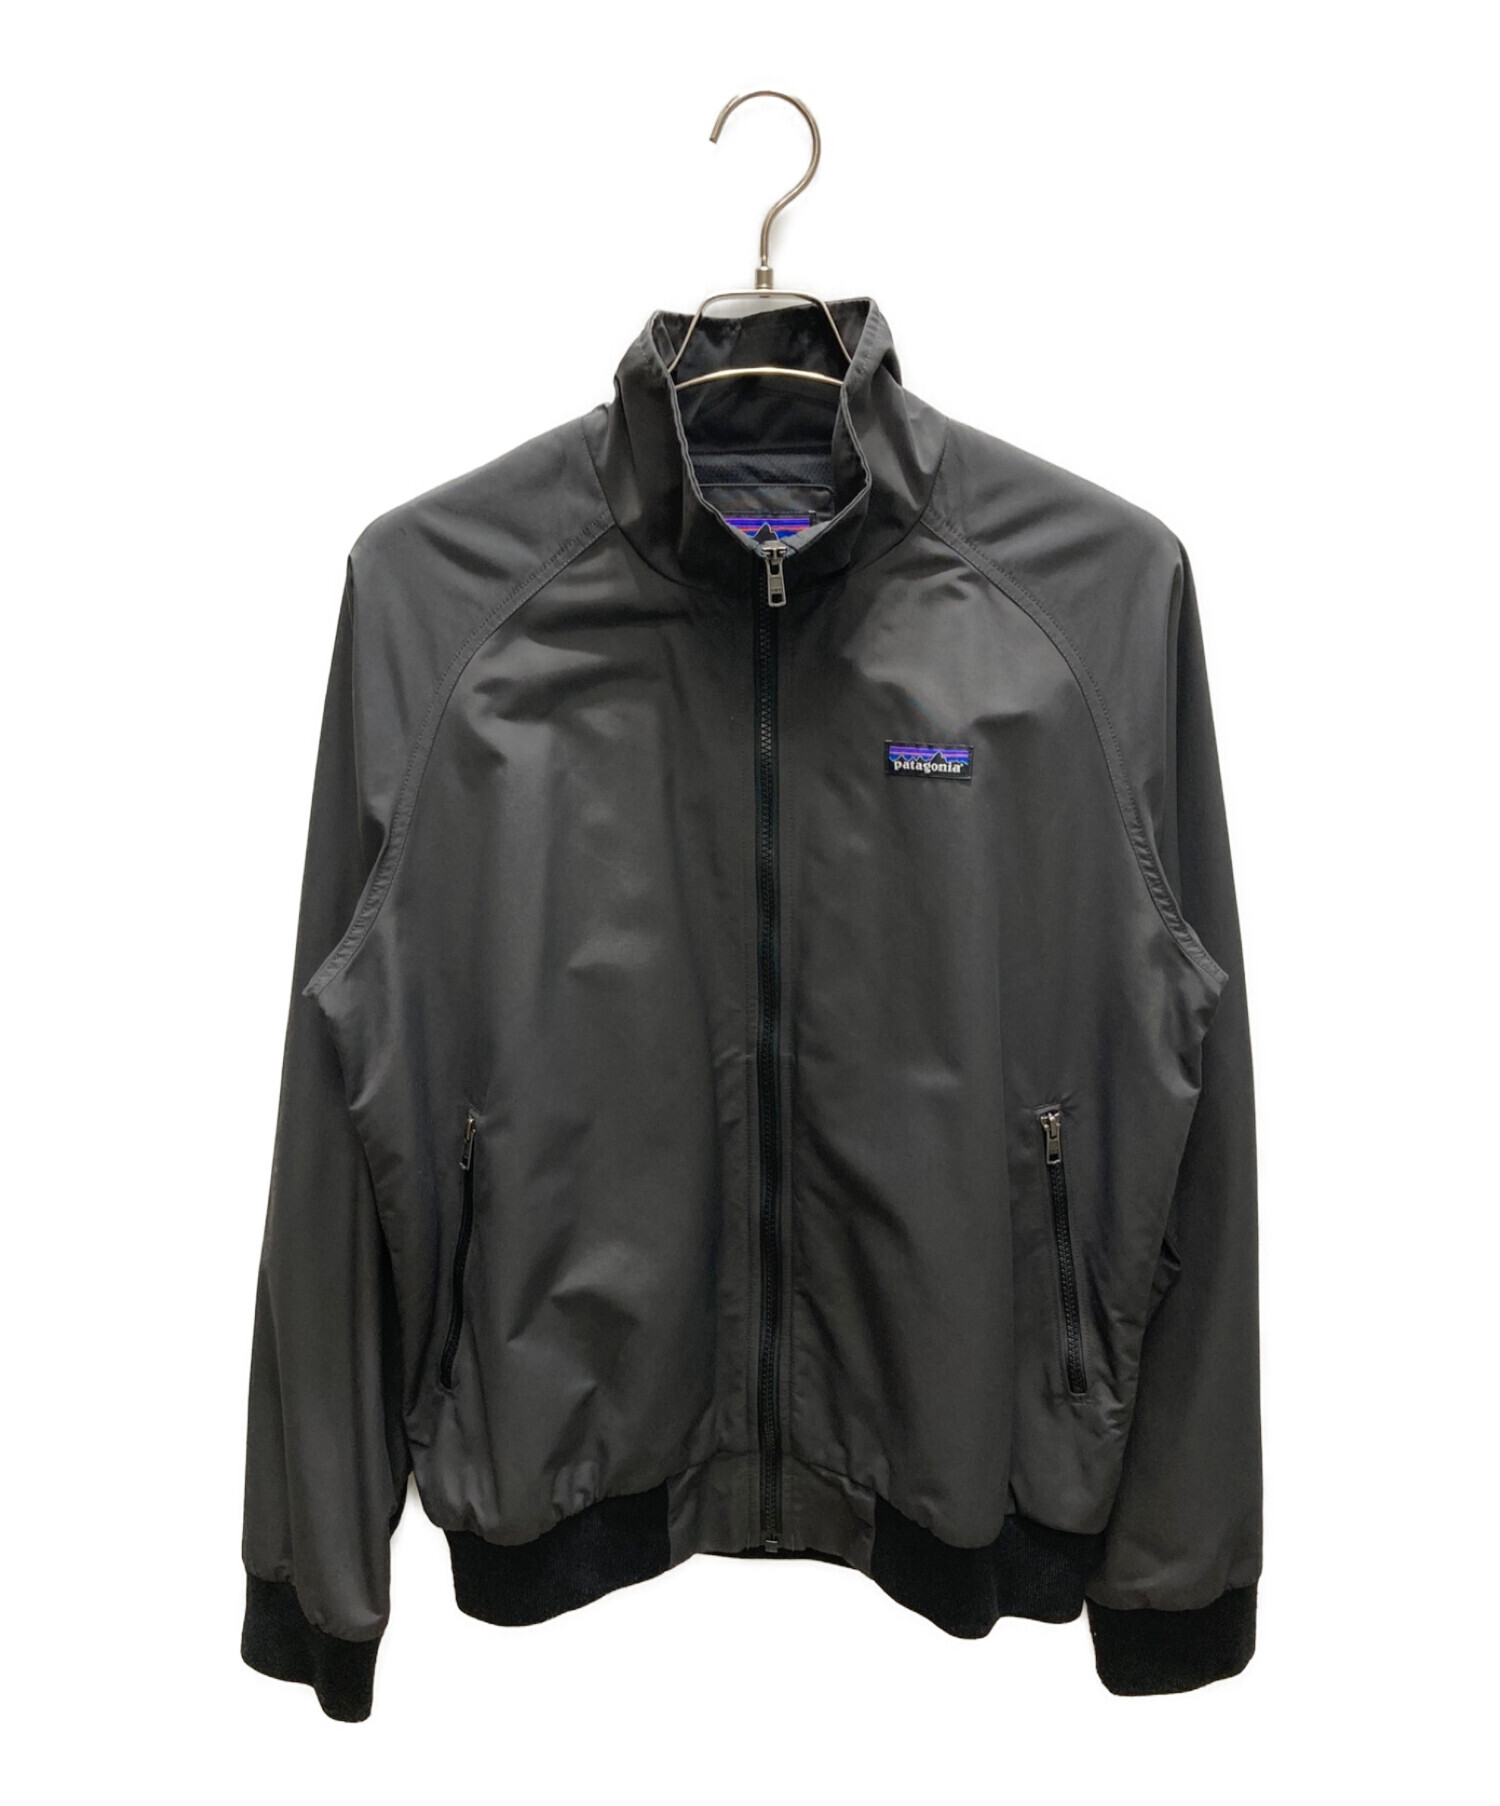 Patagonia (パタゴニア) バギーズジャケット / Baggies Jacket ブラック サイズ:M